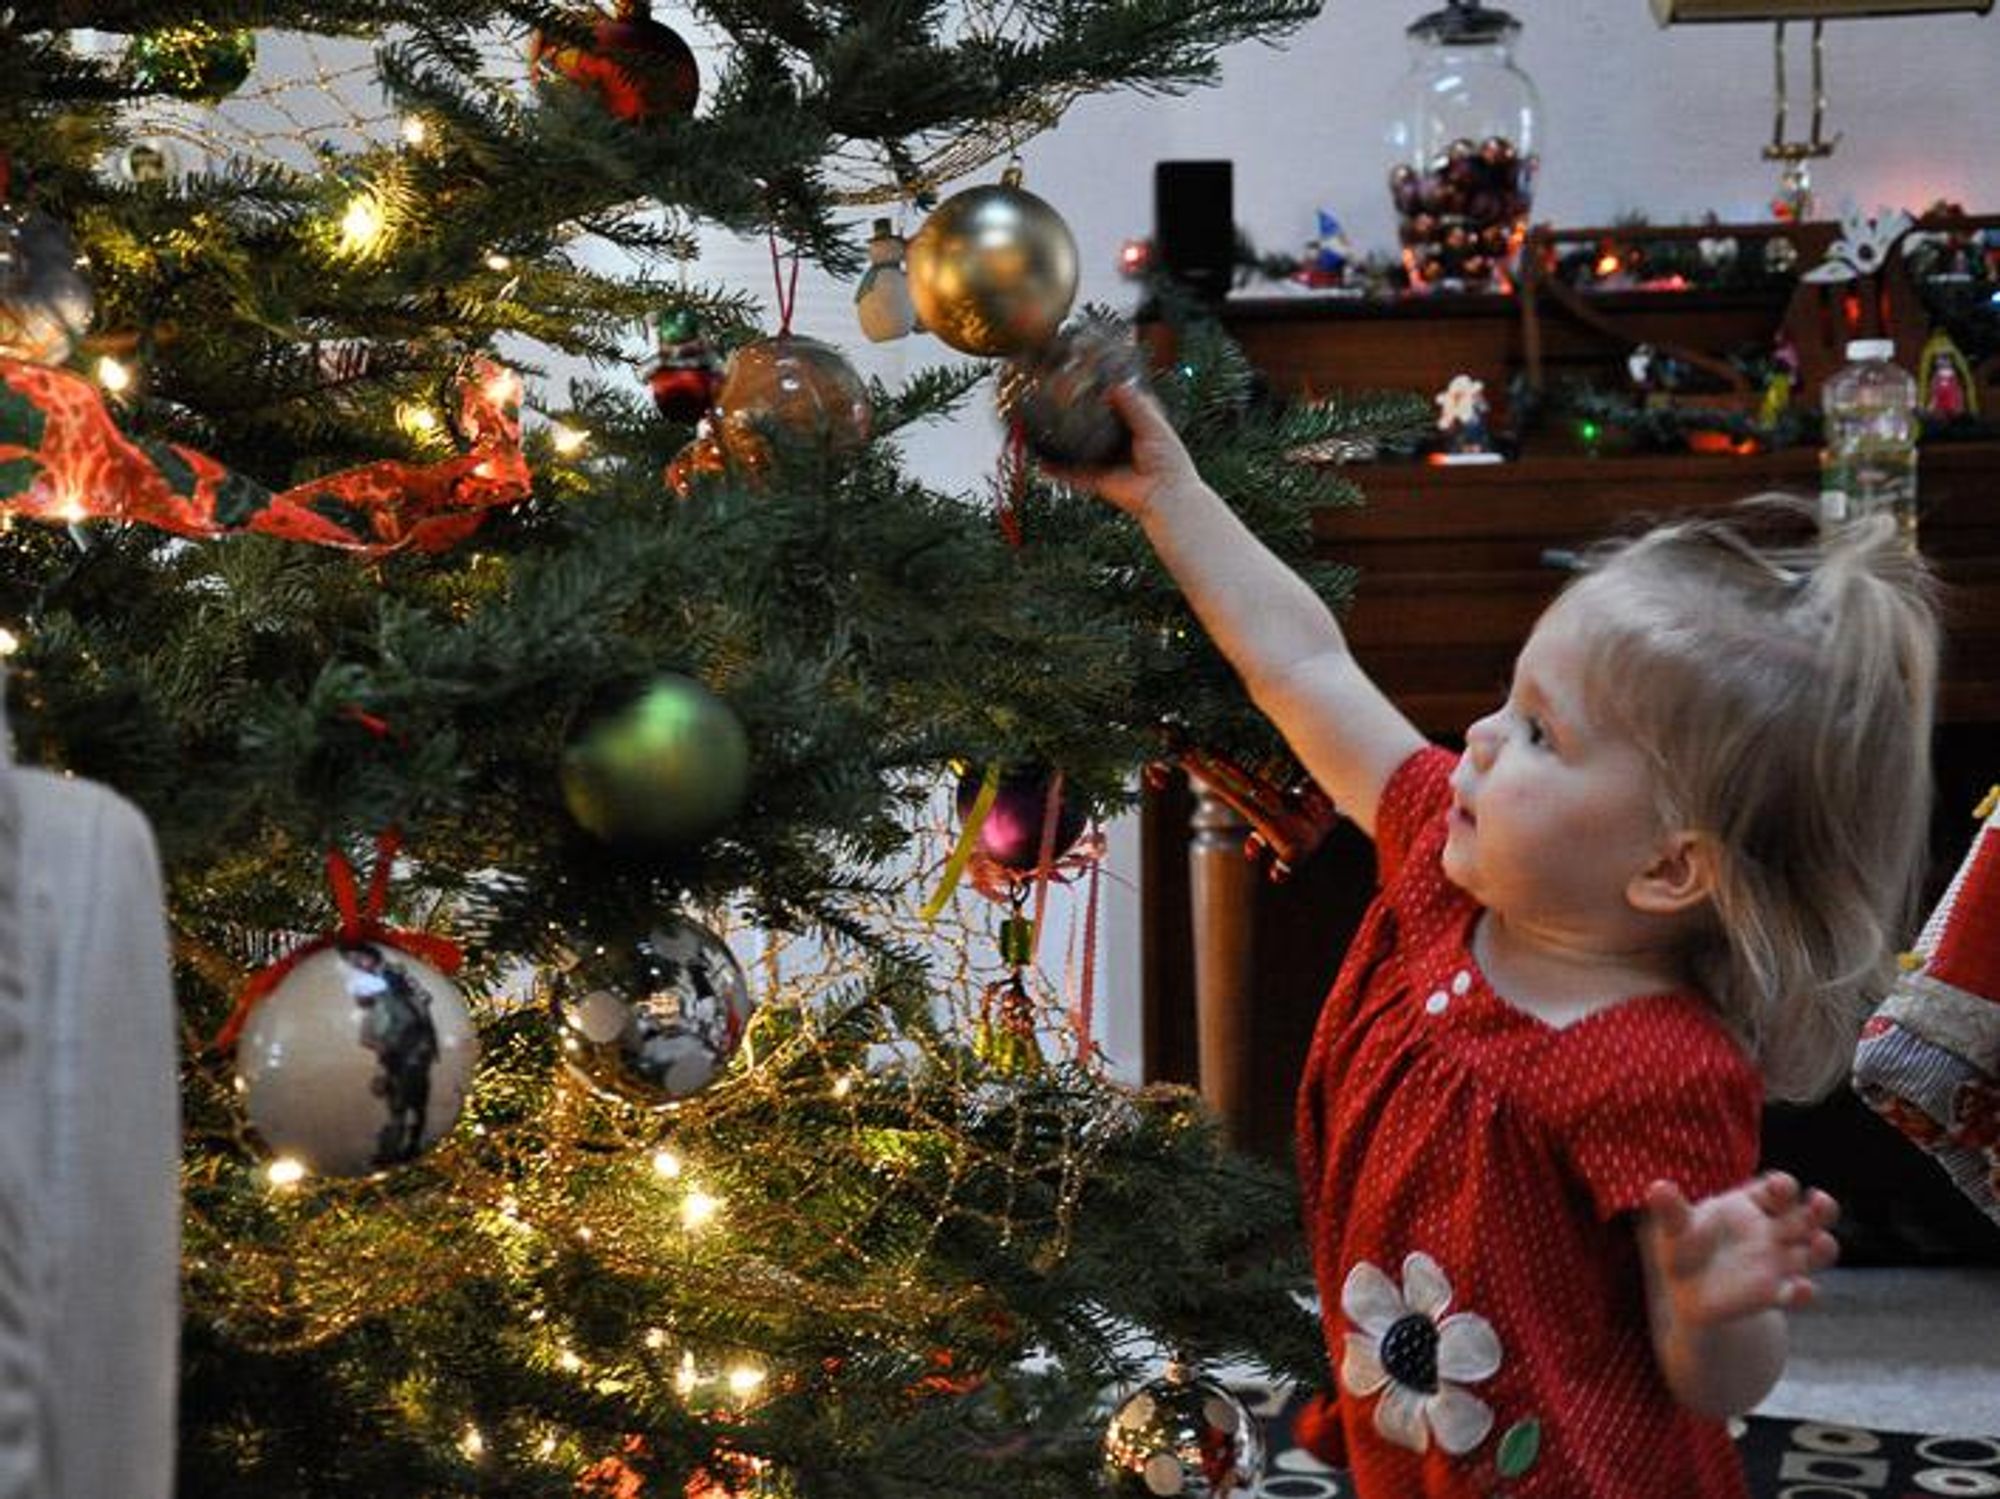 News_Amber Ambrose_Christmas tree